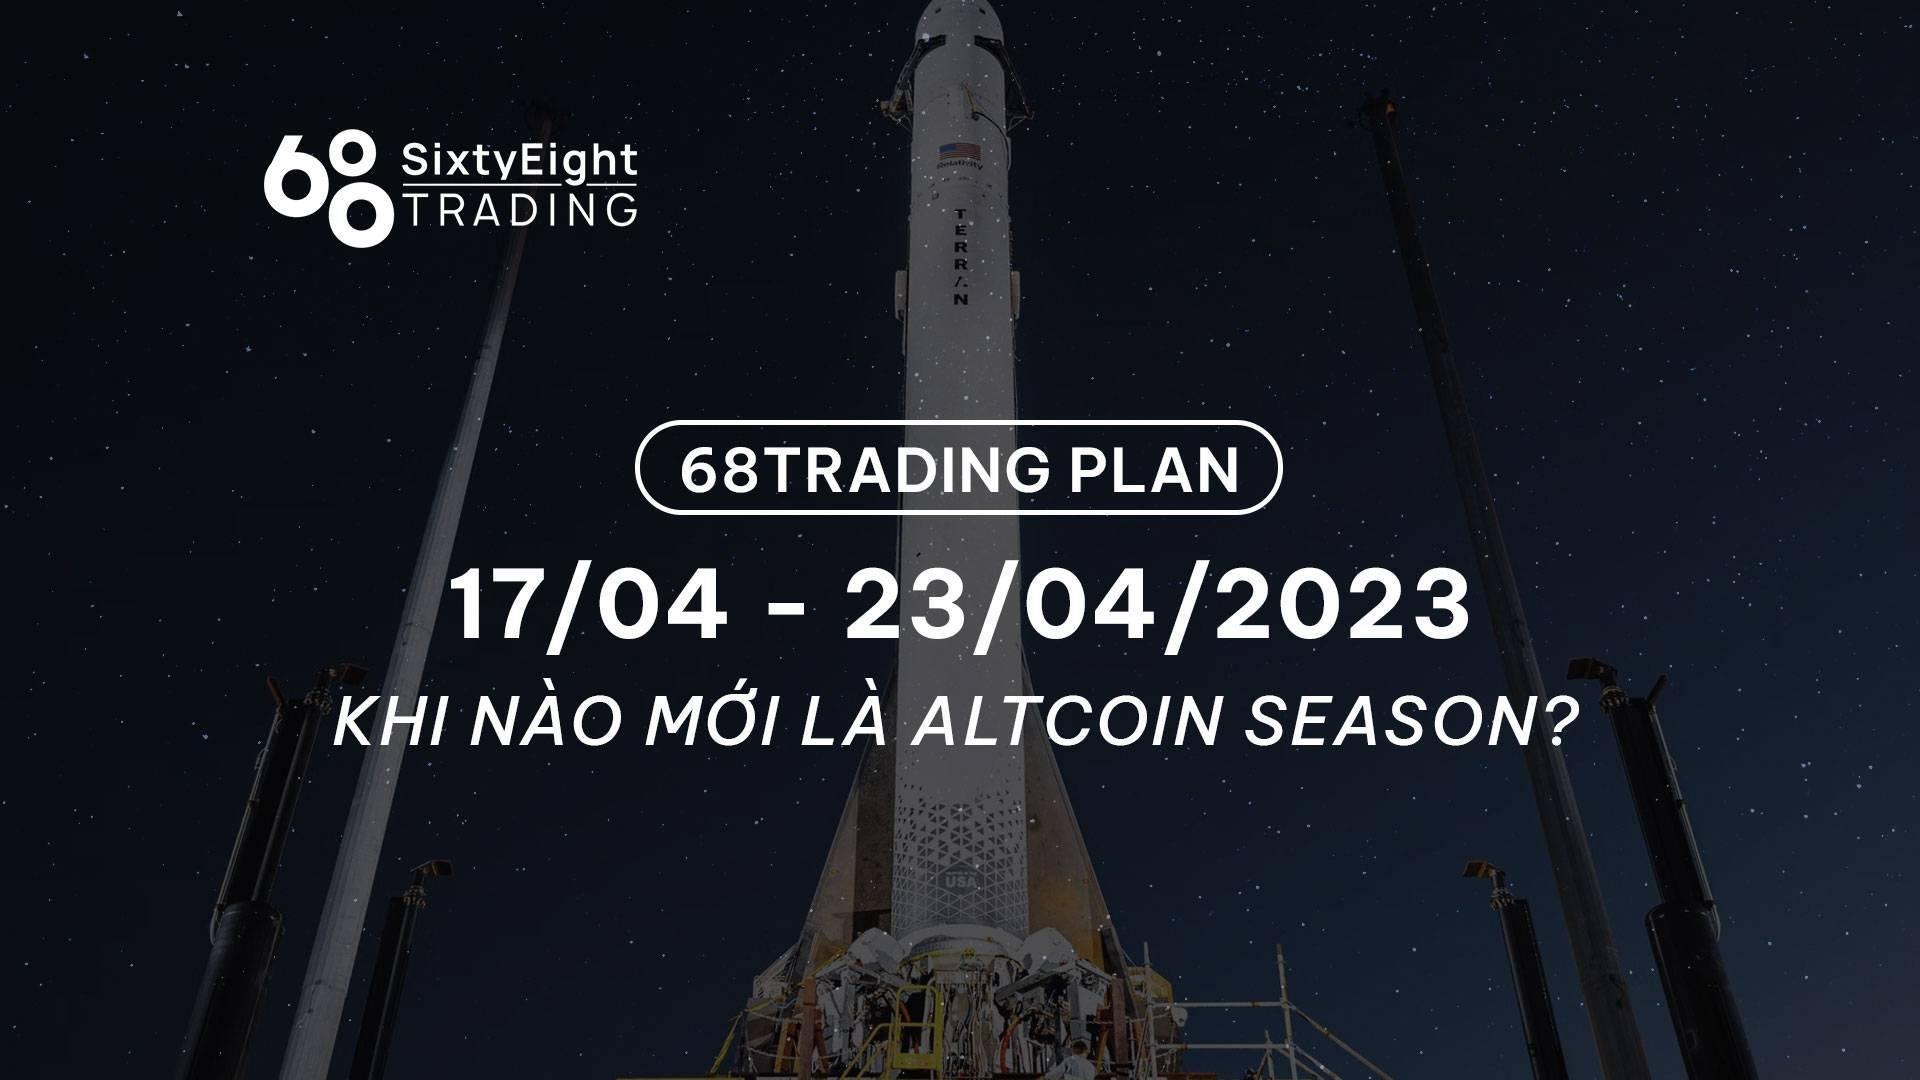 68-trading-plan-2404-30042023-khi-nao-moi-la-altcoin-season